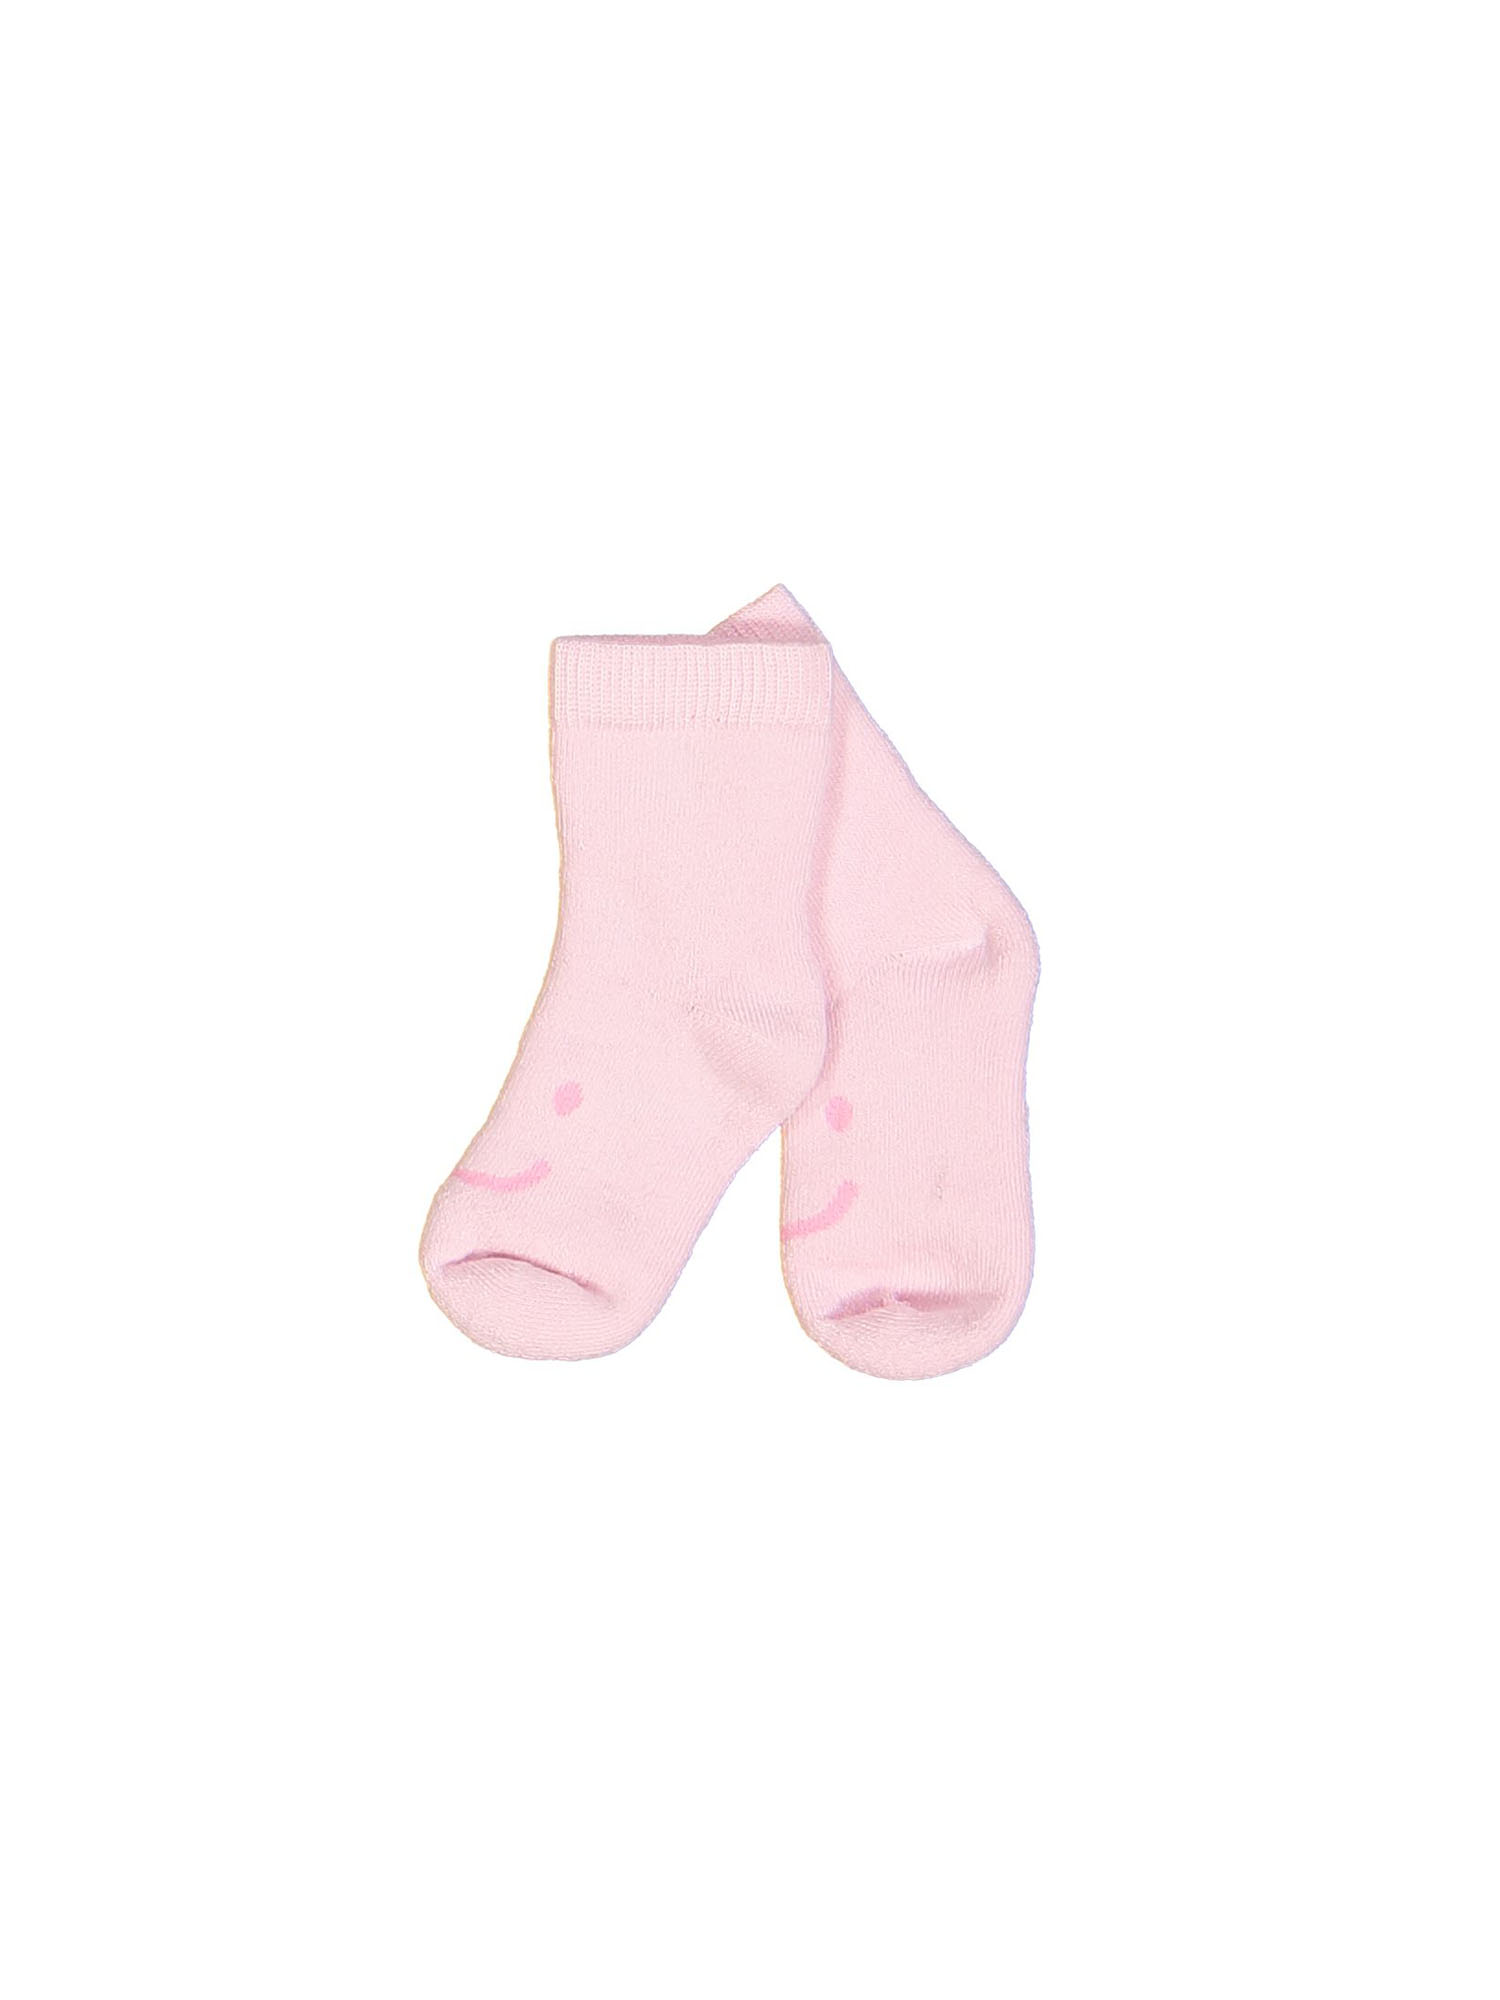 Ik denk dat ik ziek ben gesponsord trommel kousen baby smile licht roze 16-18 | Filou & Friends